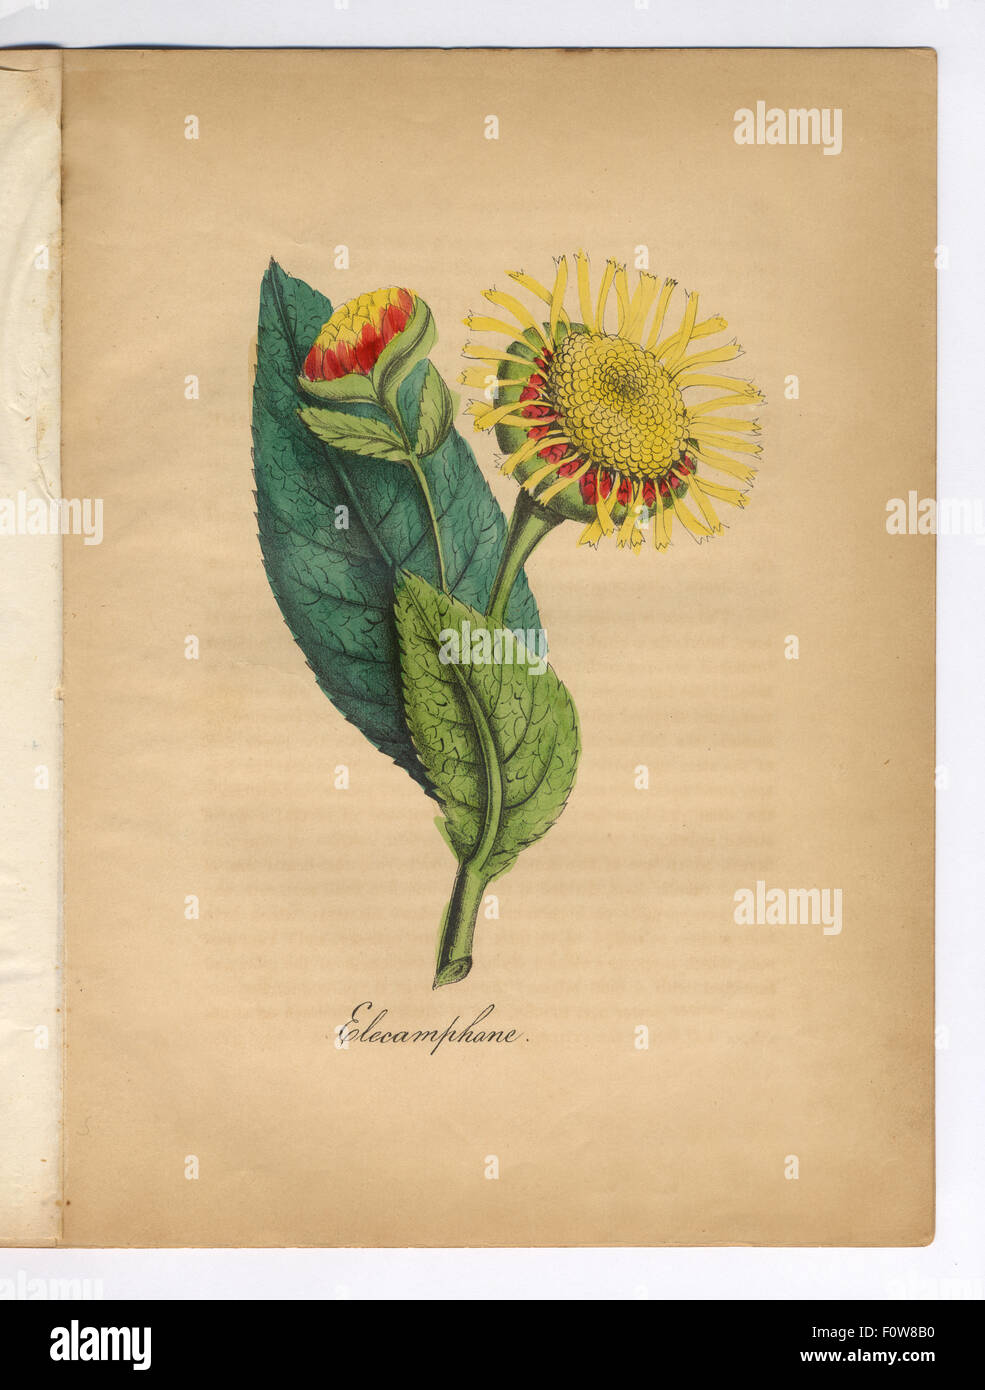 Elecamphane coloriée, guérir, les infirmières de l'Illustration botanique Banque D'Images